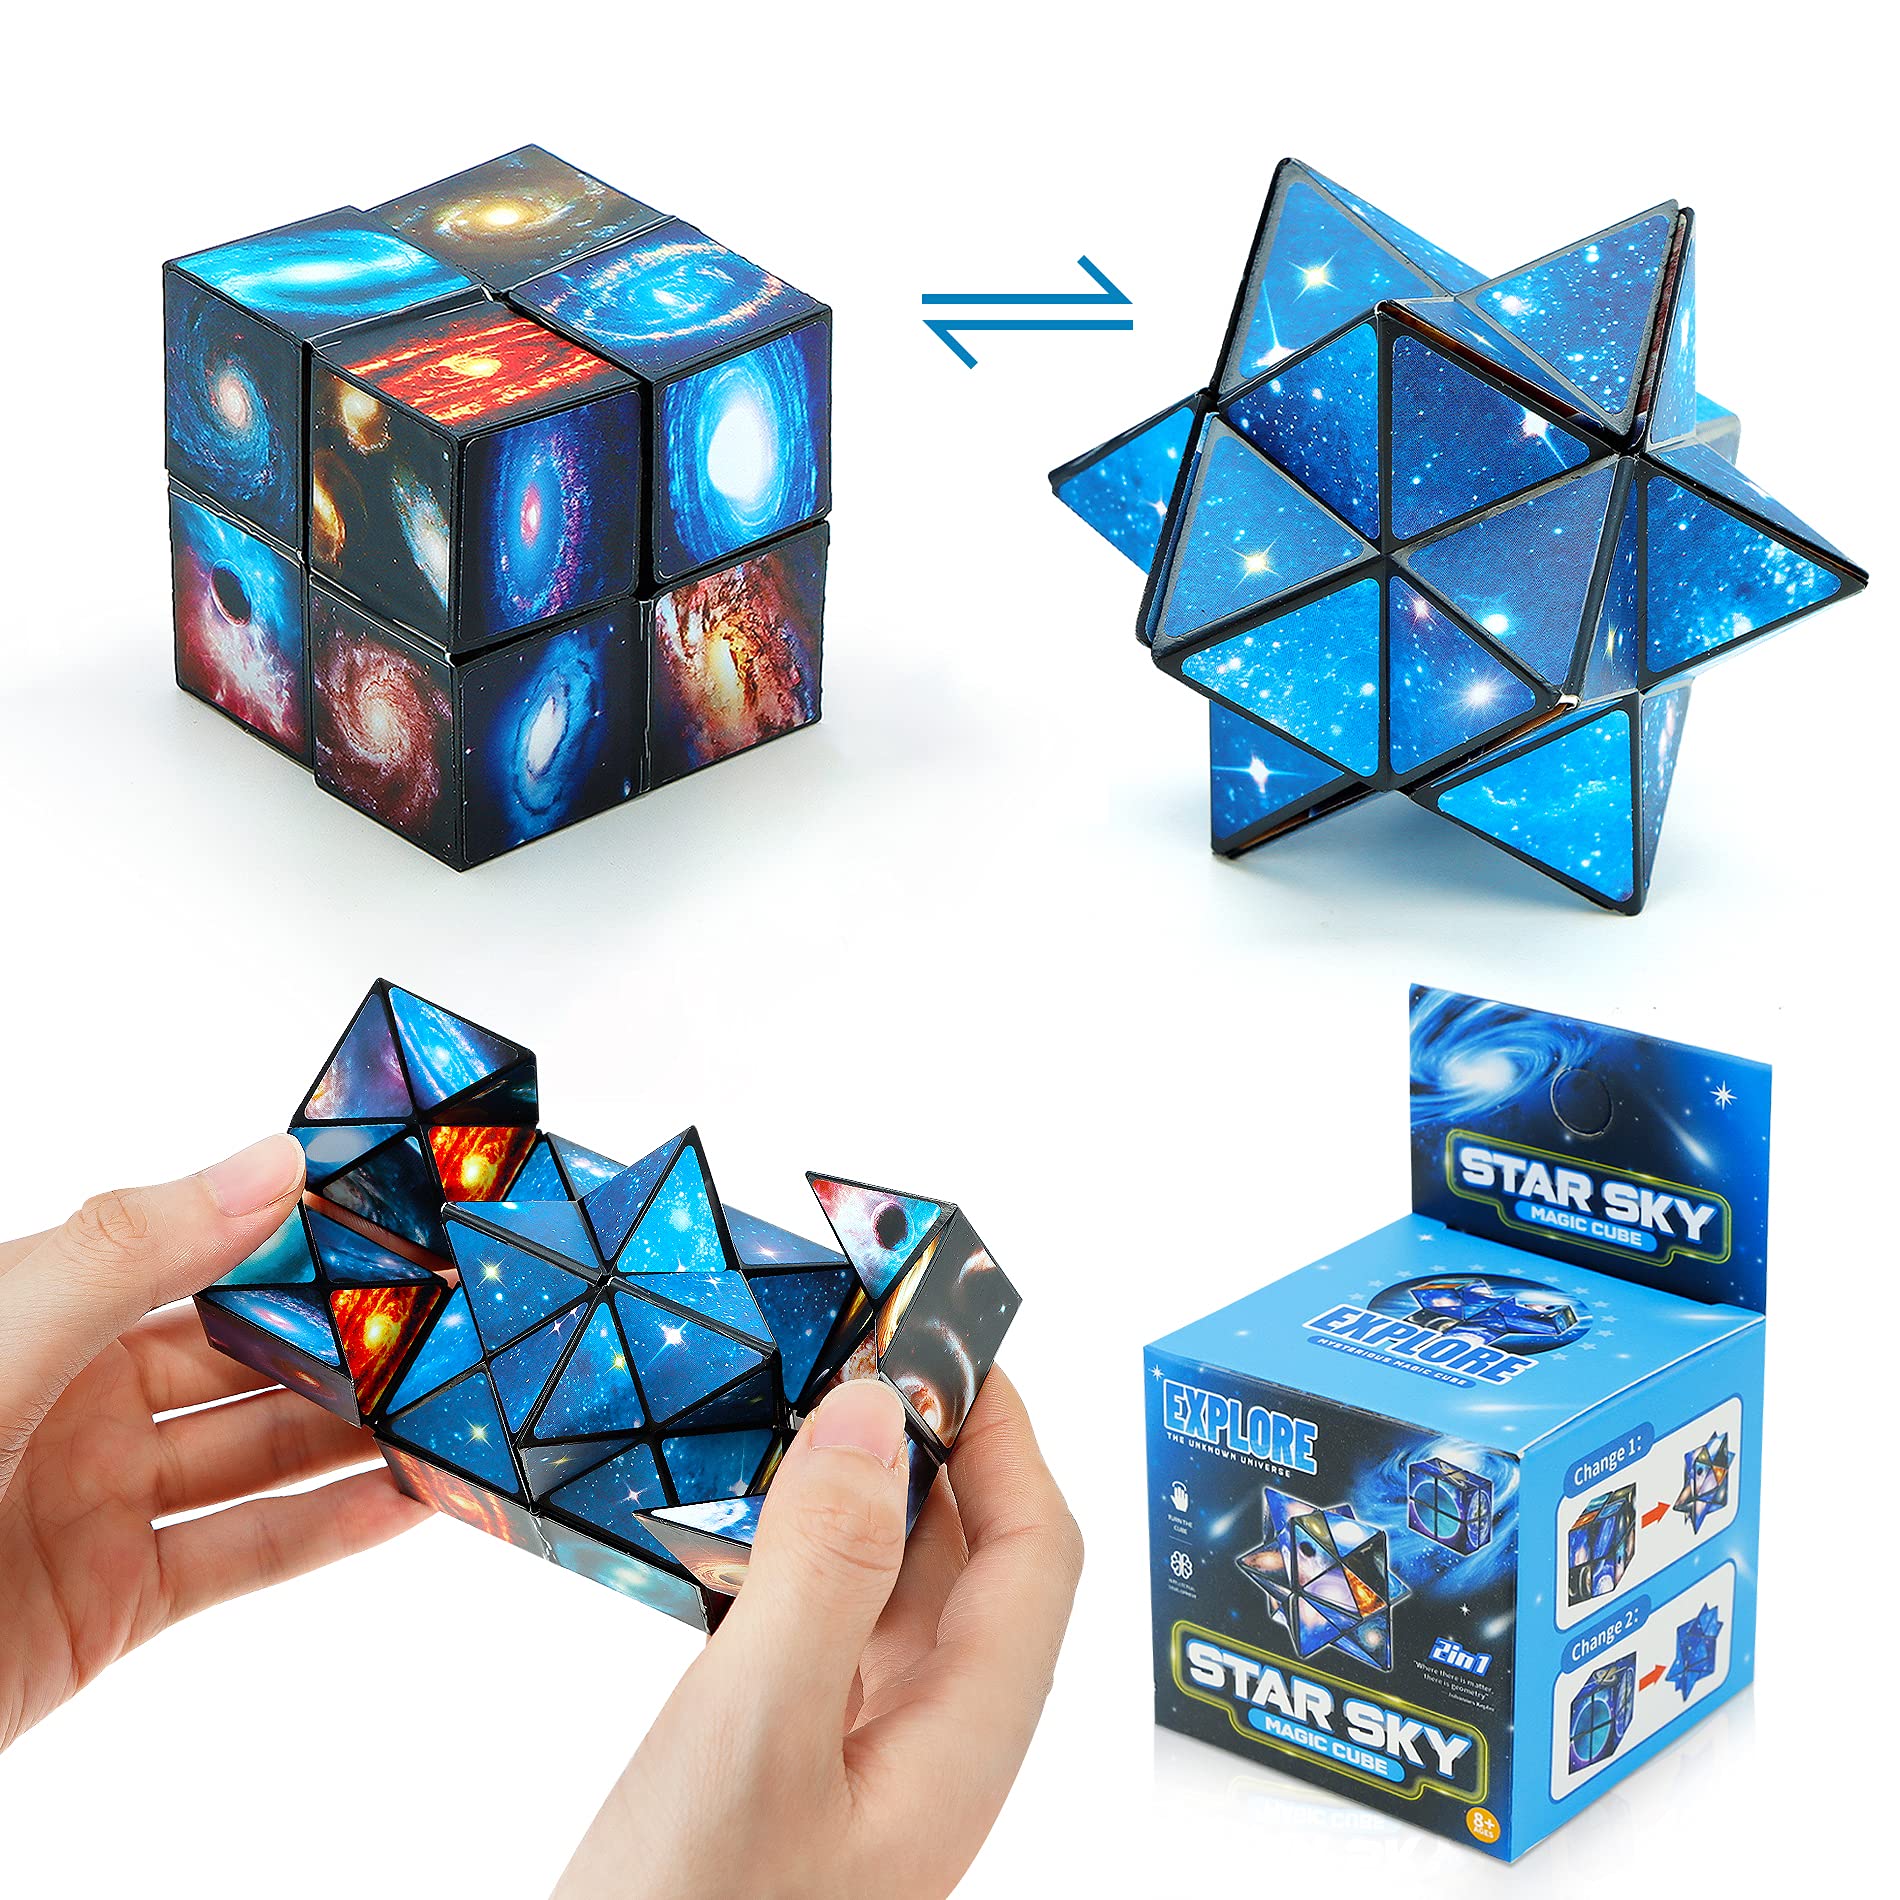 81CJRkIq5L - Infinity Cube Fidget